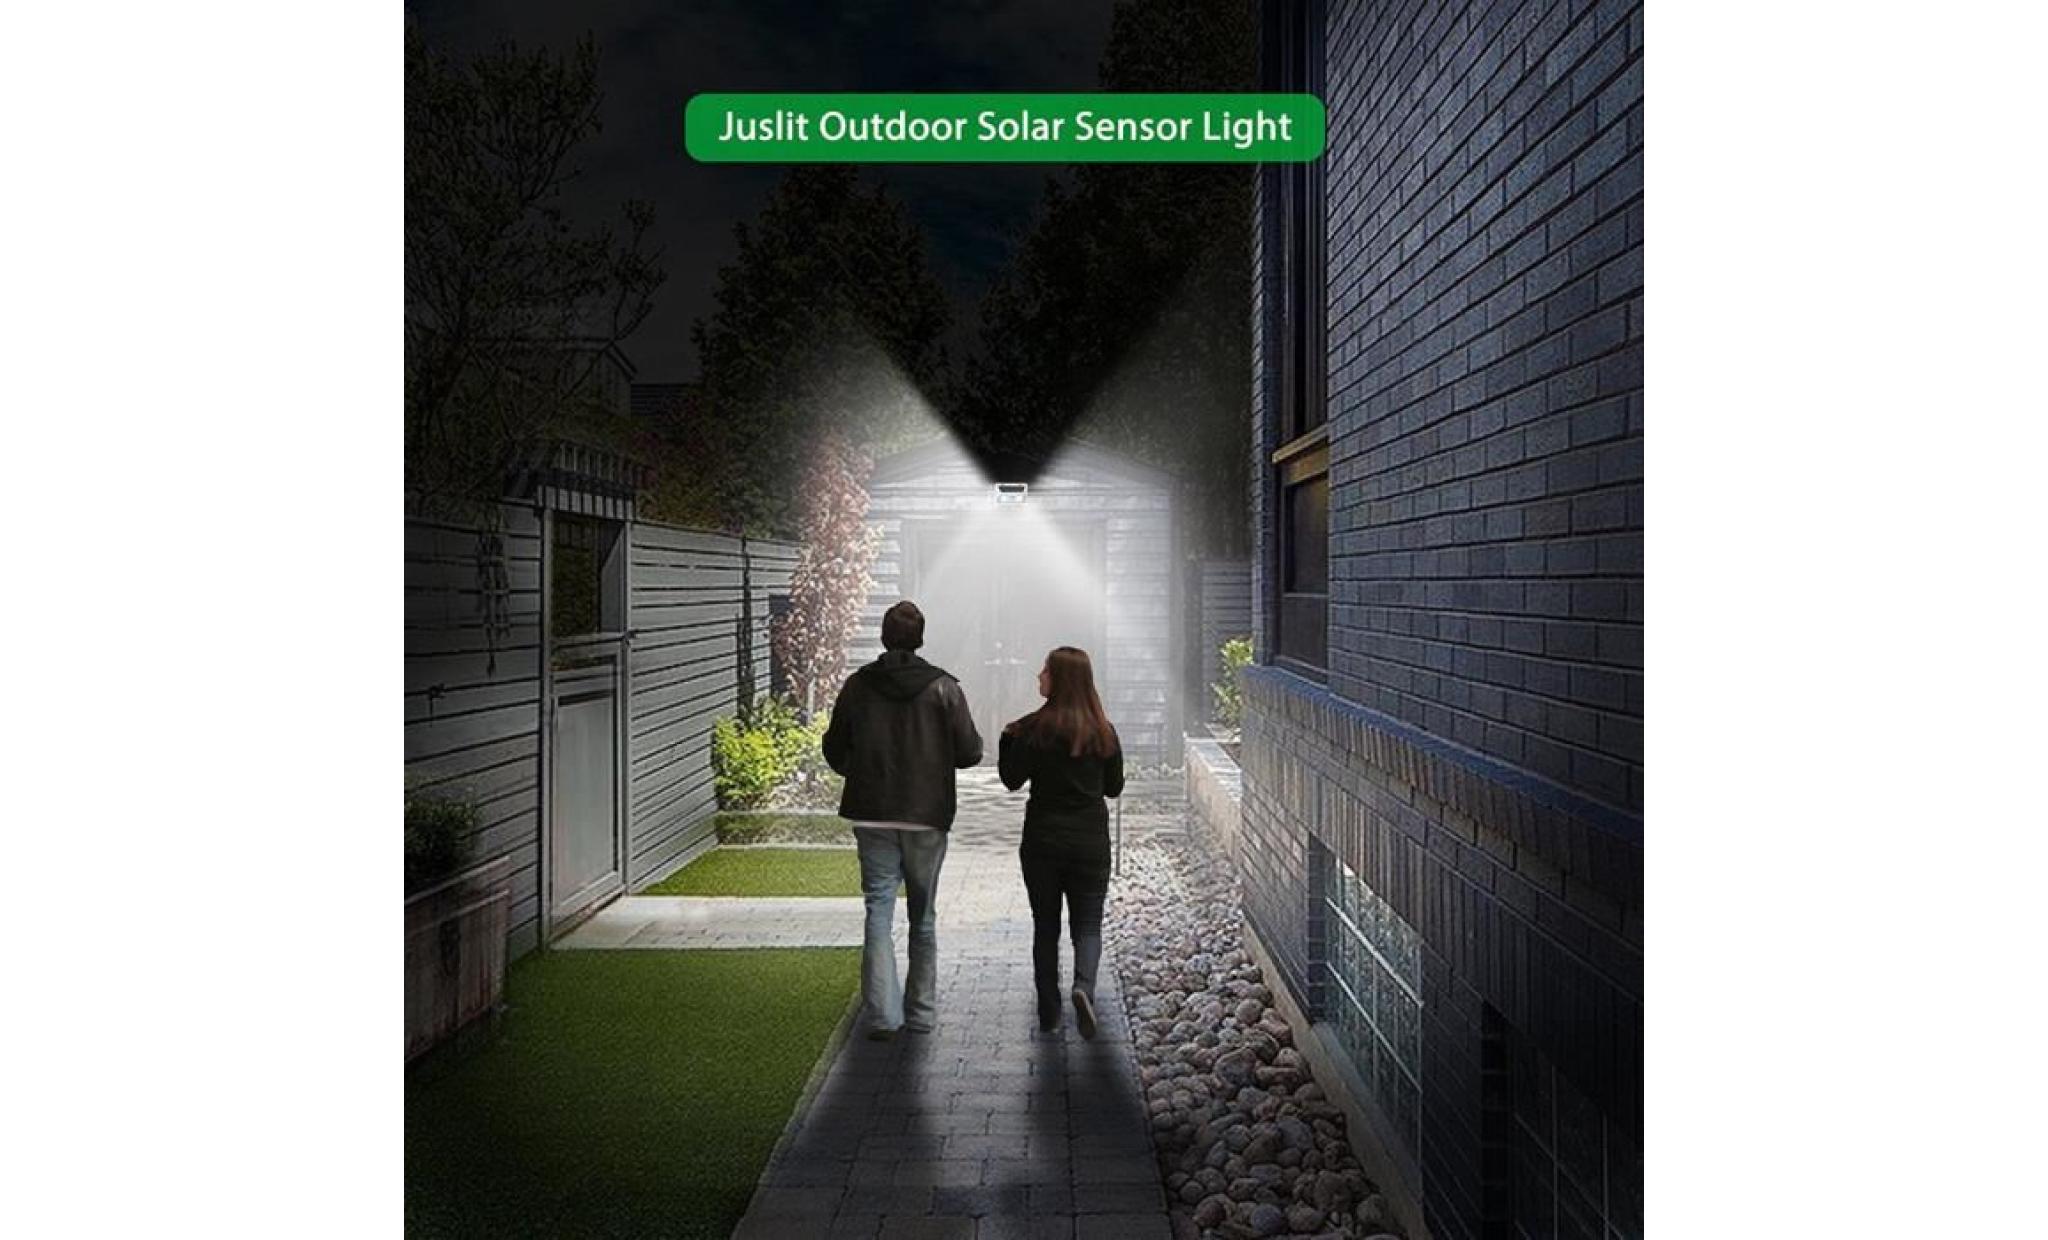 borne solaire 95 smd cob lumière solaire pir motion sensor lampe de jardin de rue extérieure #pa 342 pas cher